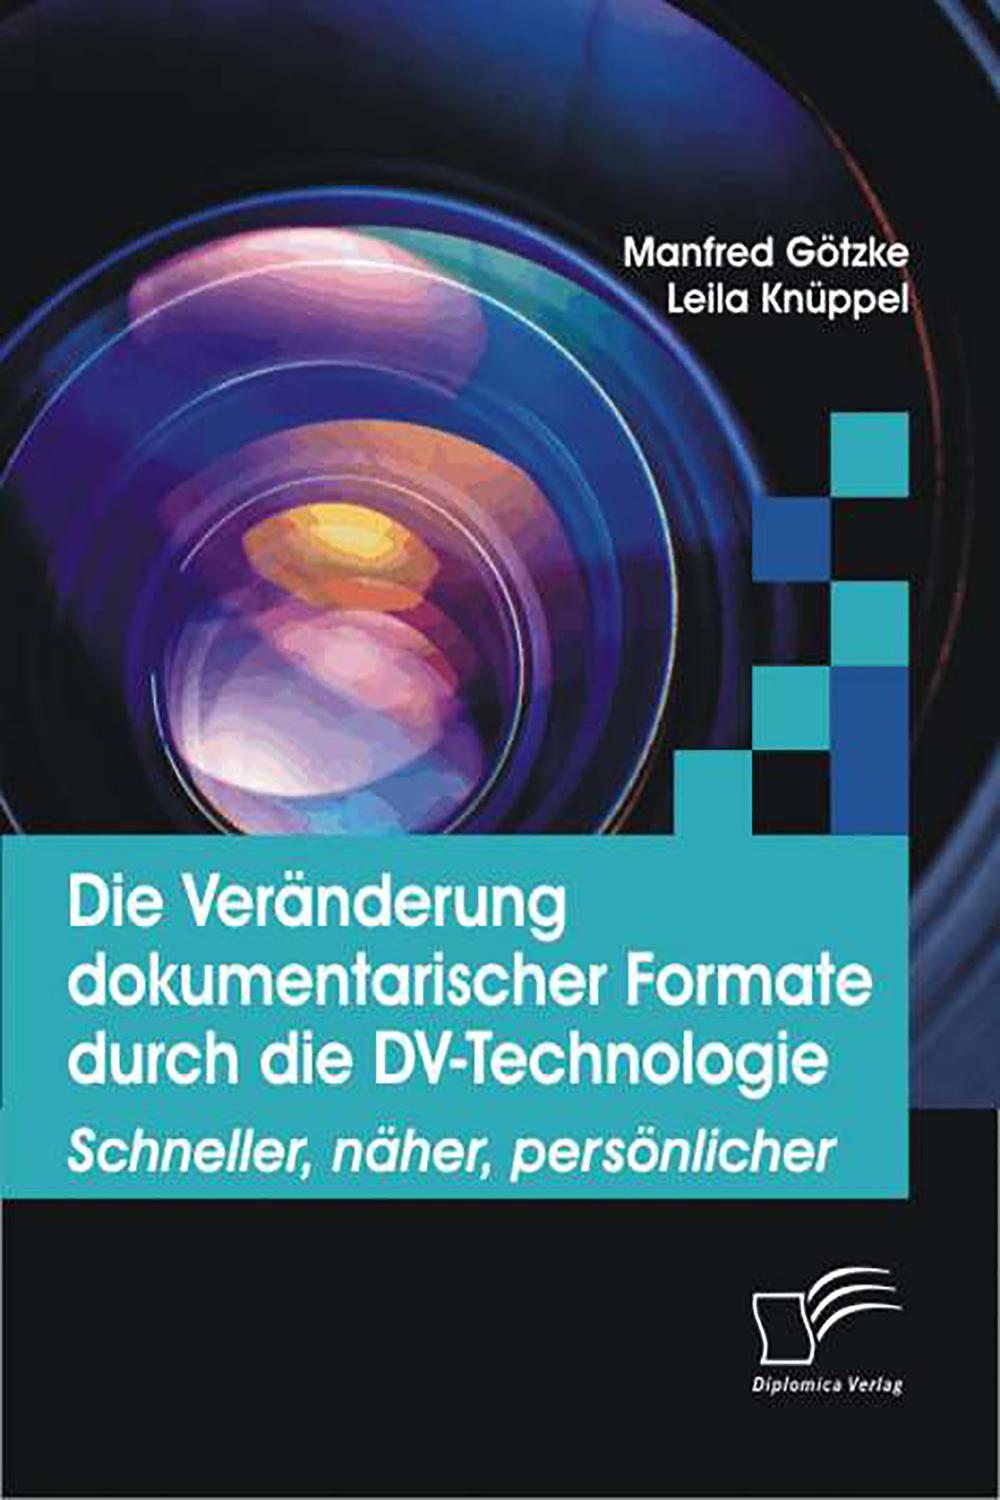 Die Veränderung dokumentarischer Formate durch die DV-Technologie - Manfred Götzke, Leila Knüppel